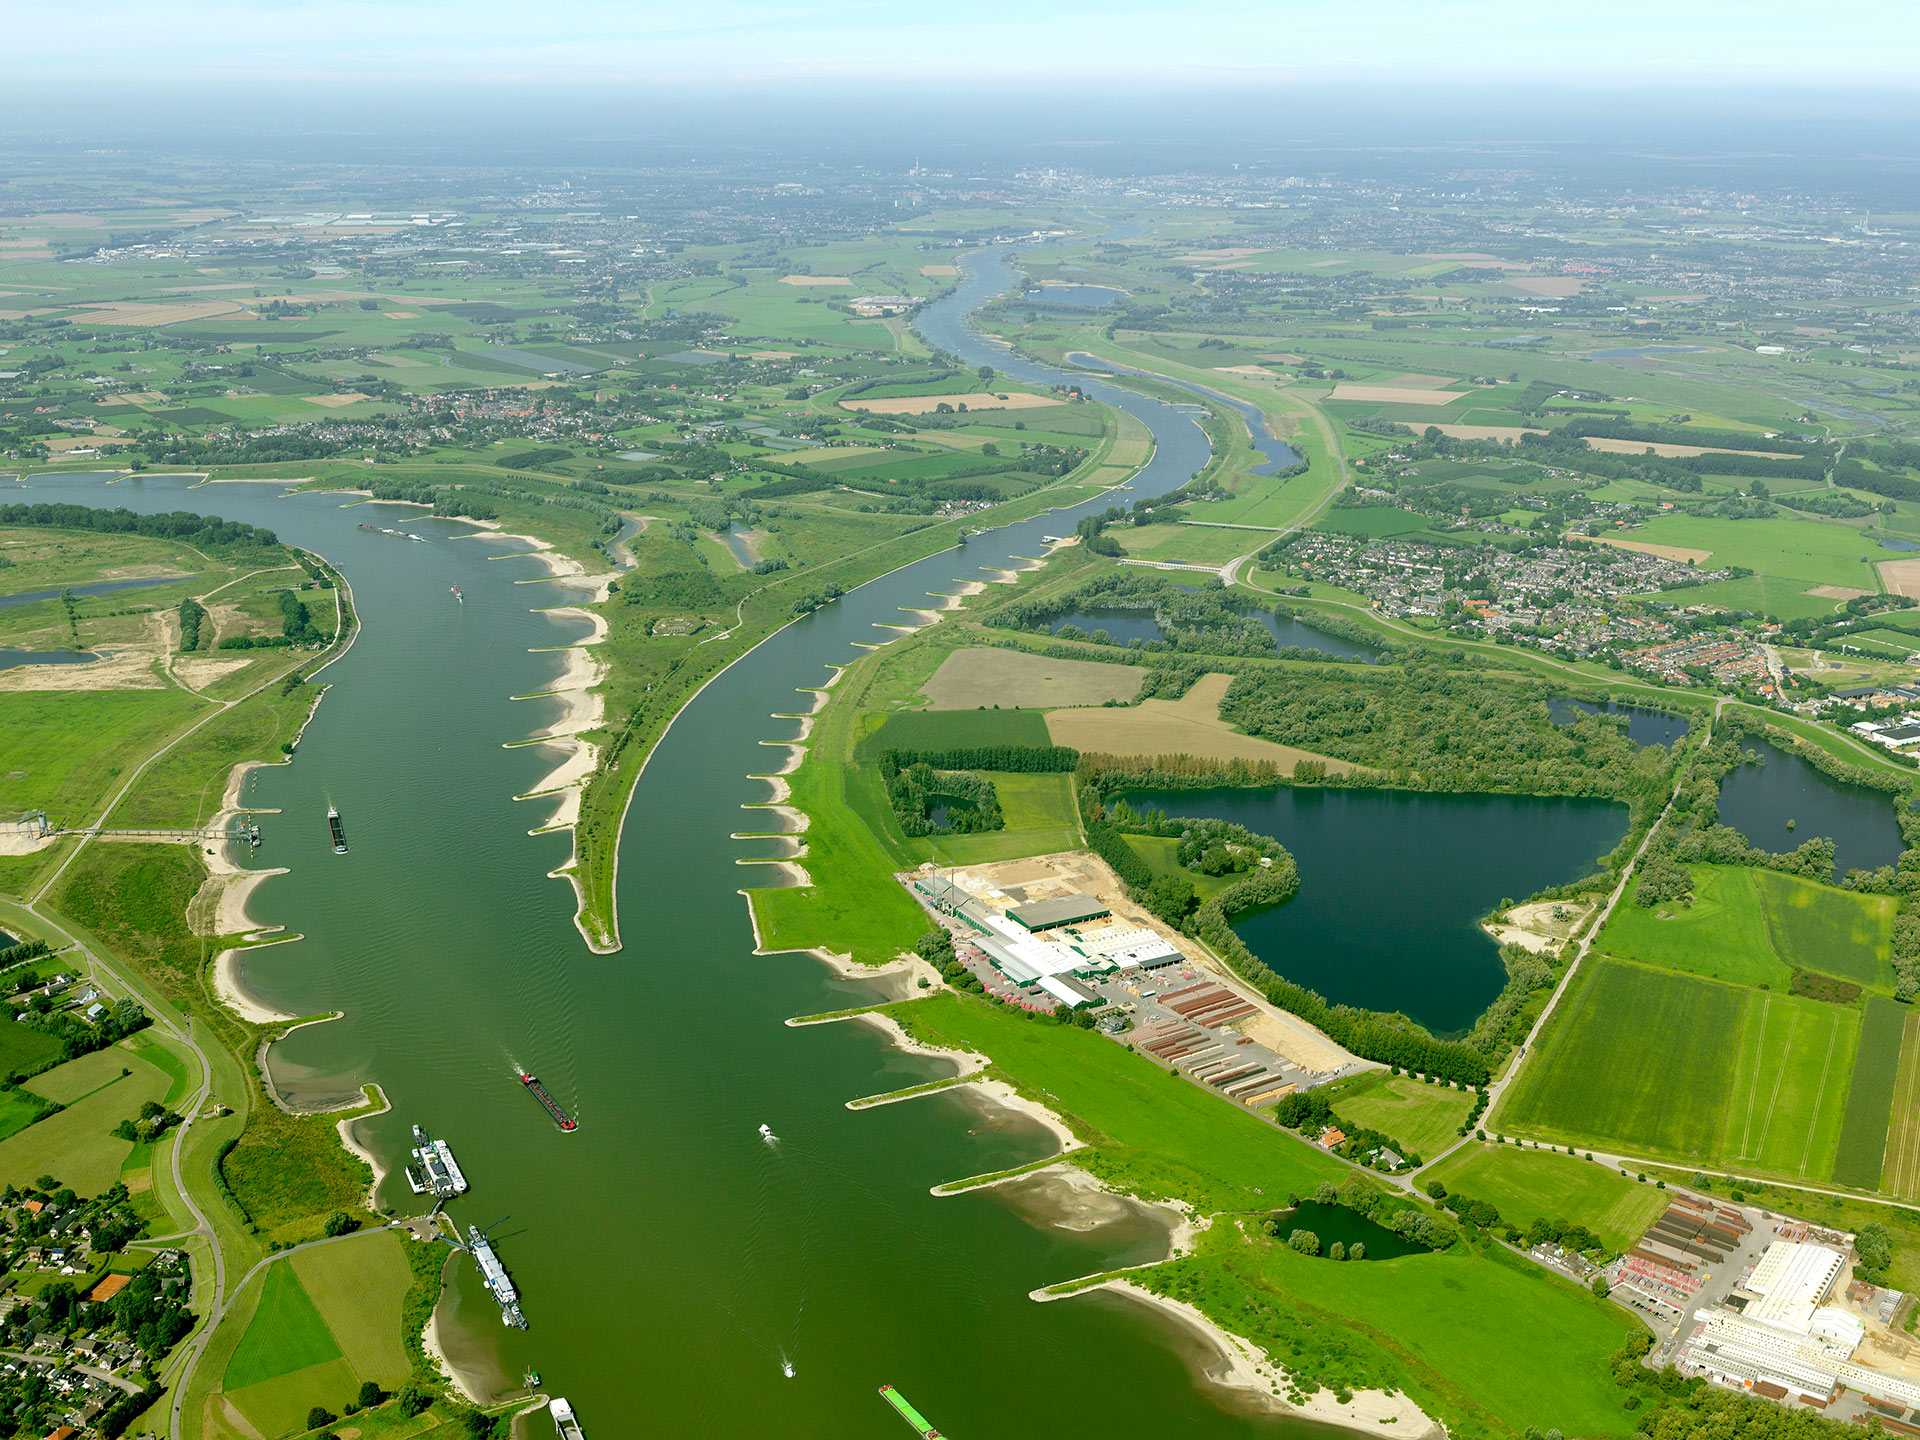 gespleten rivieroever in nederland